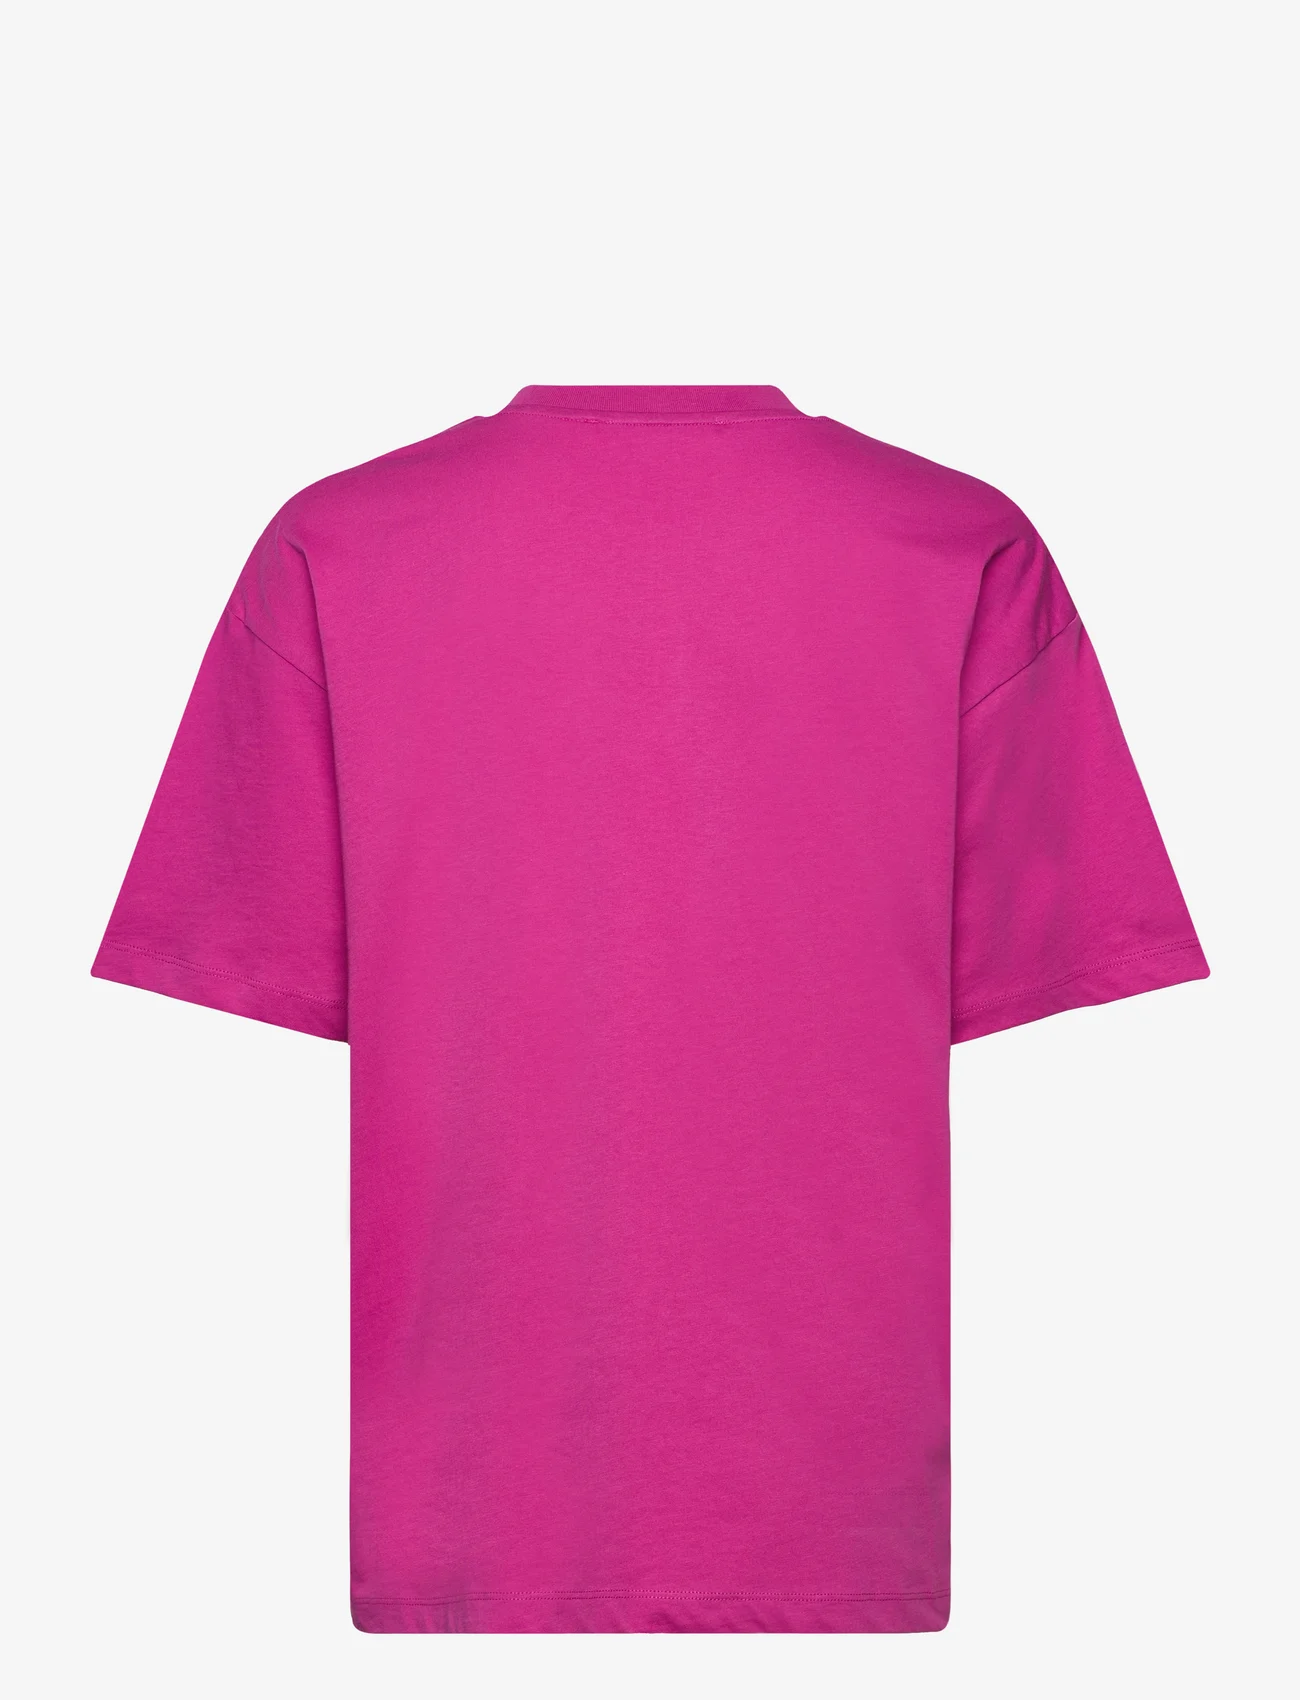 Samsøe Samsøe - Eira t-shirt 10379 - t-krekli - rose violet - 1